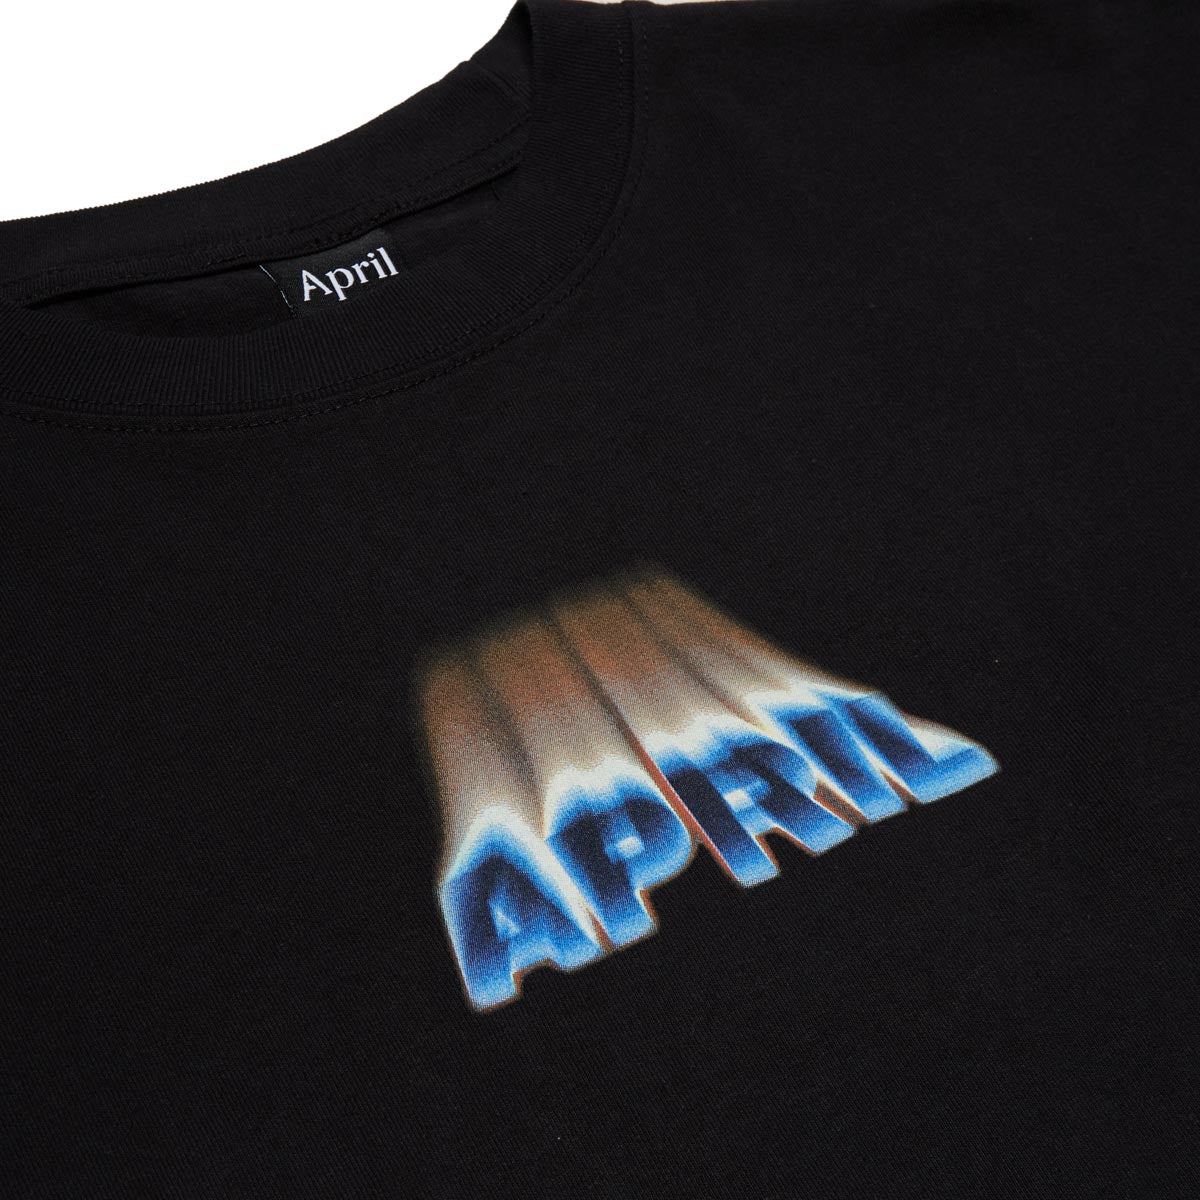 April Dust  T-Shirt - Black image 2